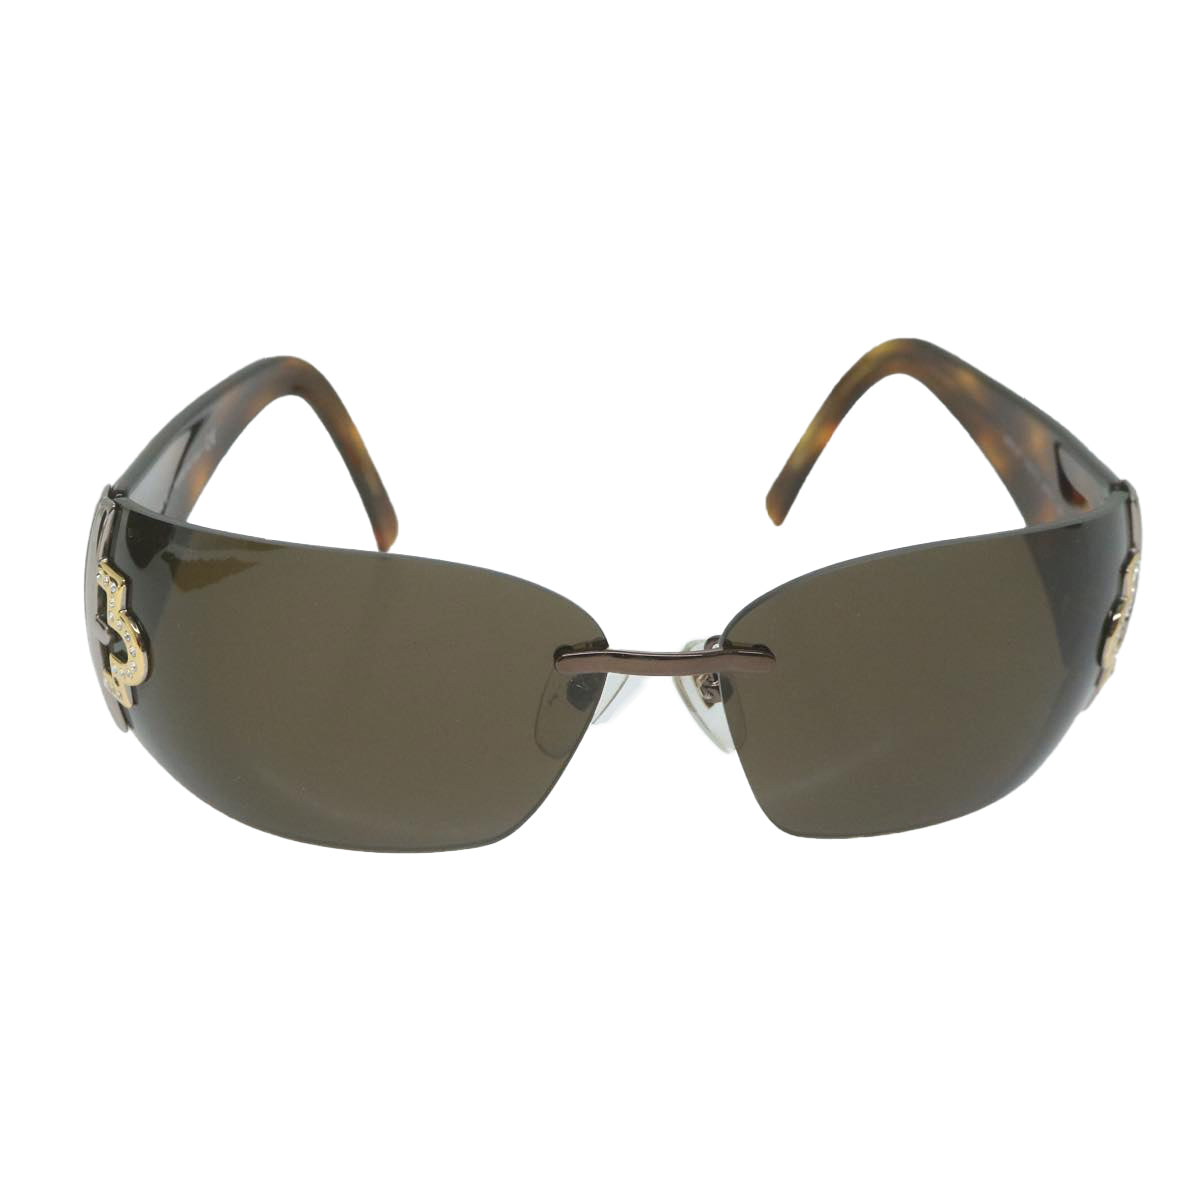 BVLGARI Sunglasses Plastic Brown Auth ep2777 - 0